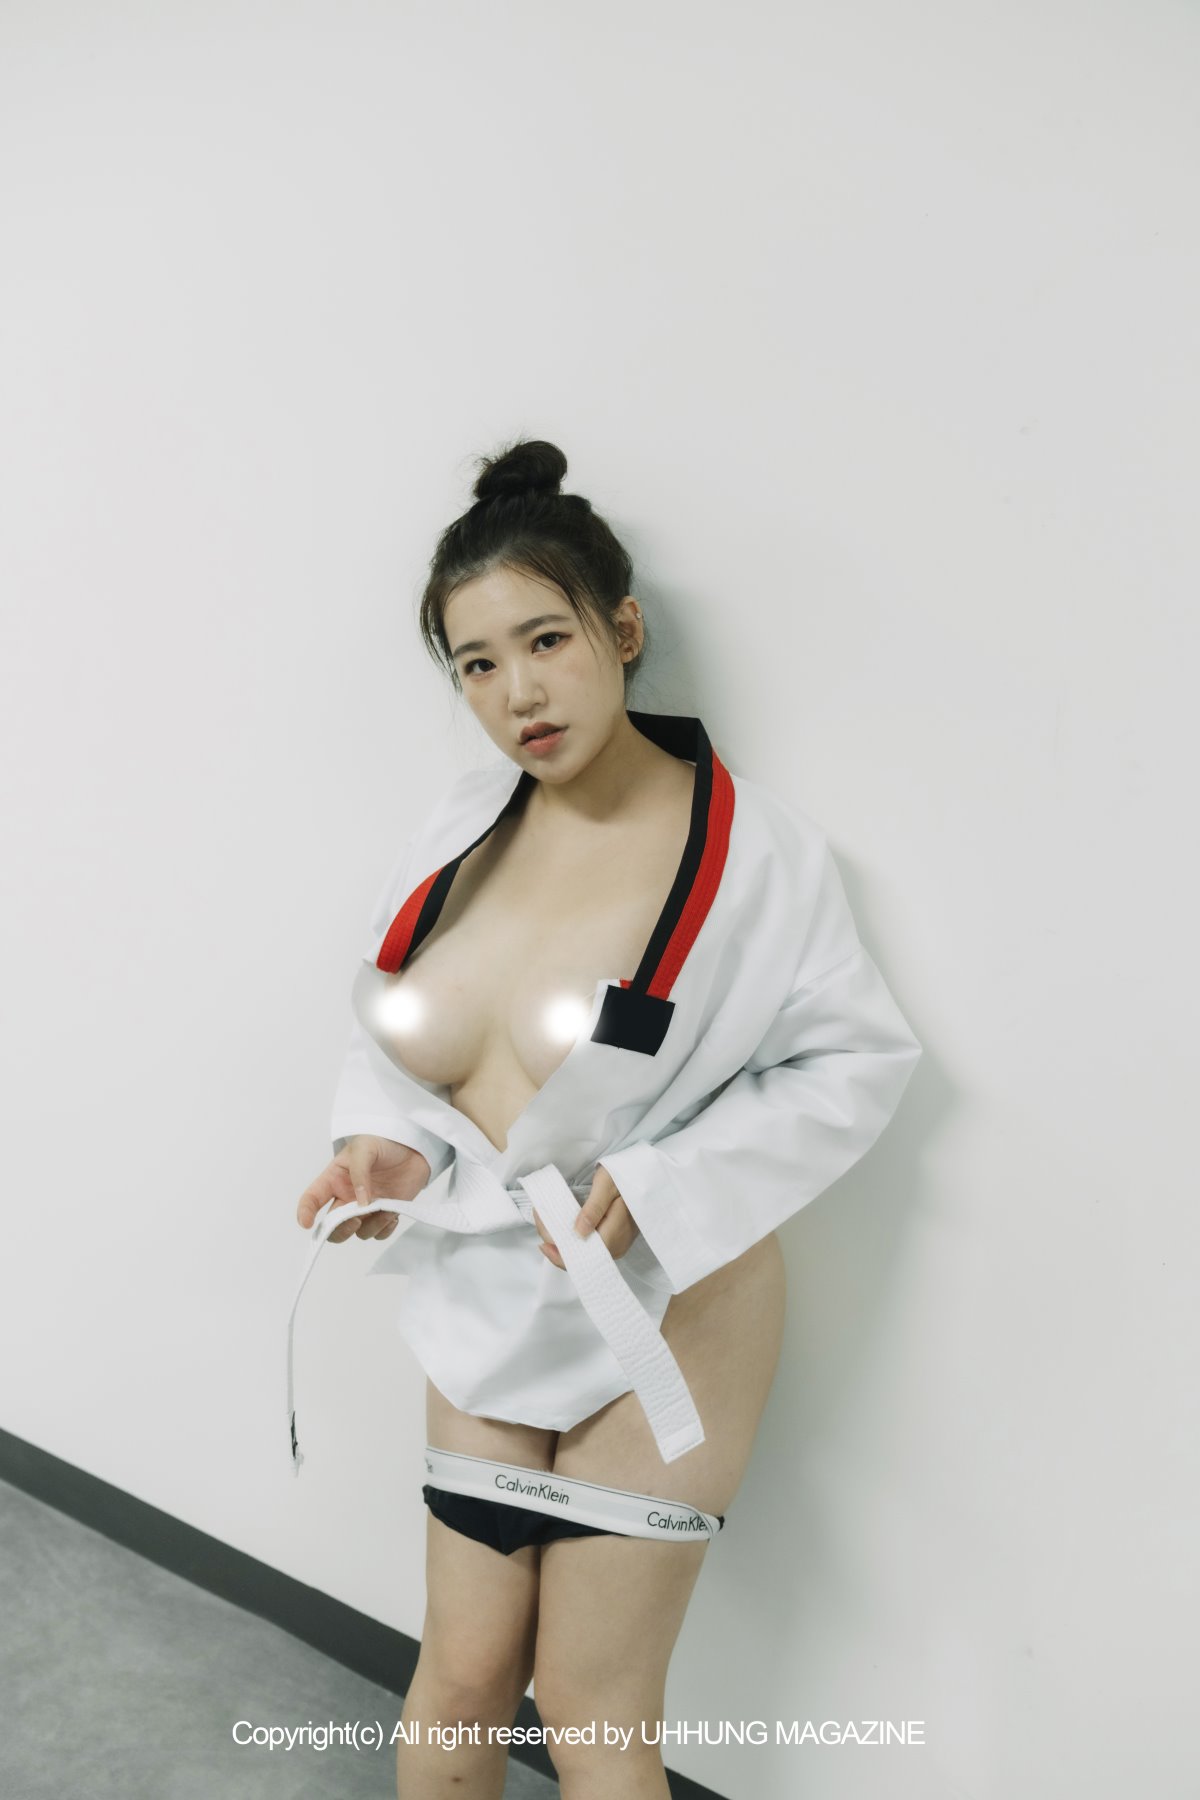 UHHUNG MAGAZINE Jenn Vol 1 Taekwondo Part2 0012 5048921281.jpg